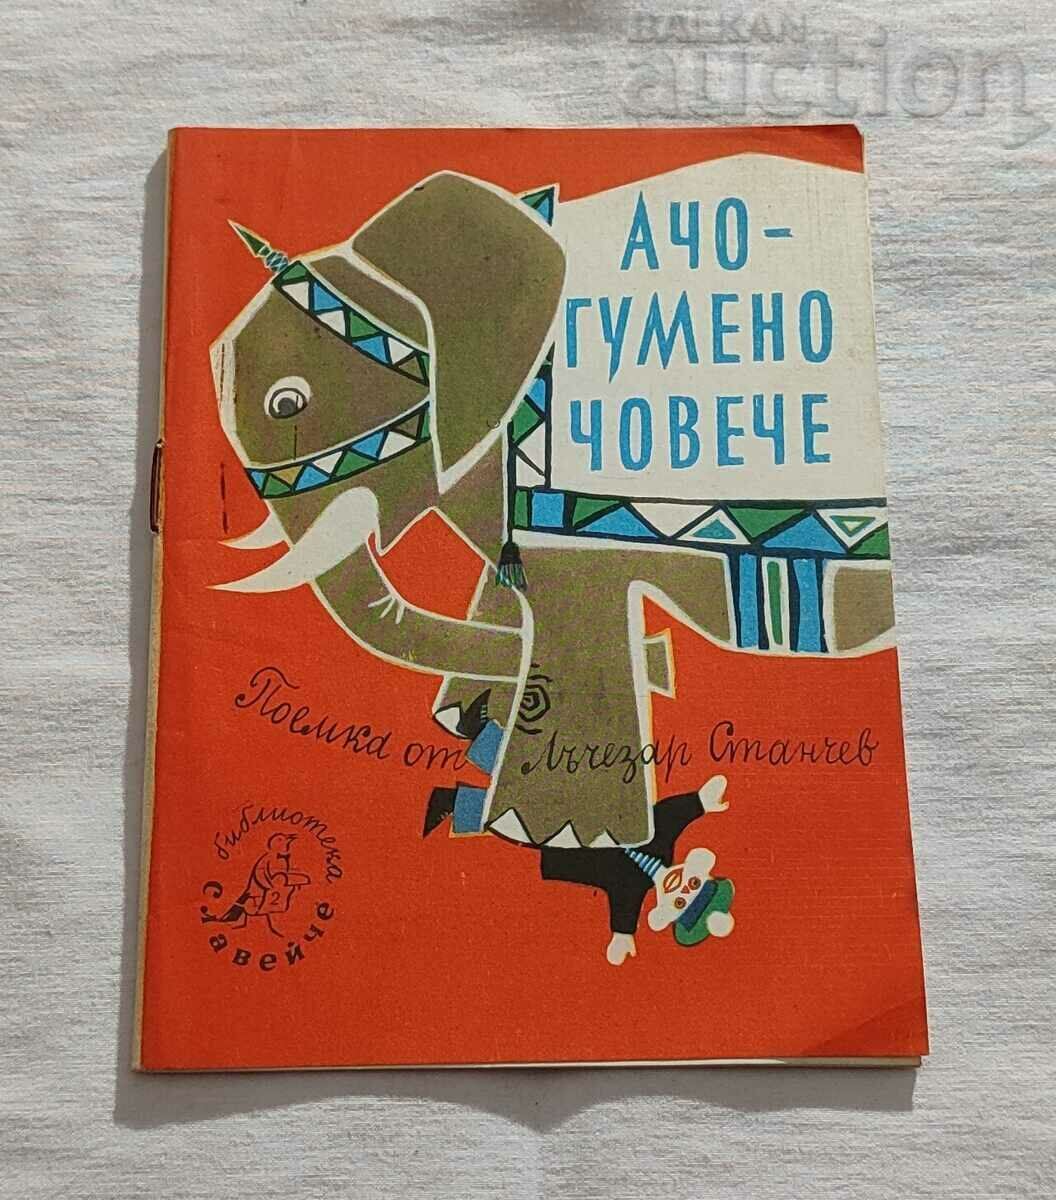 АЧО - ГУМЕНО ЧОВЕЧЕ ЛЪЧЕЗАР СТАНЧЕВ 1960 г.